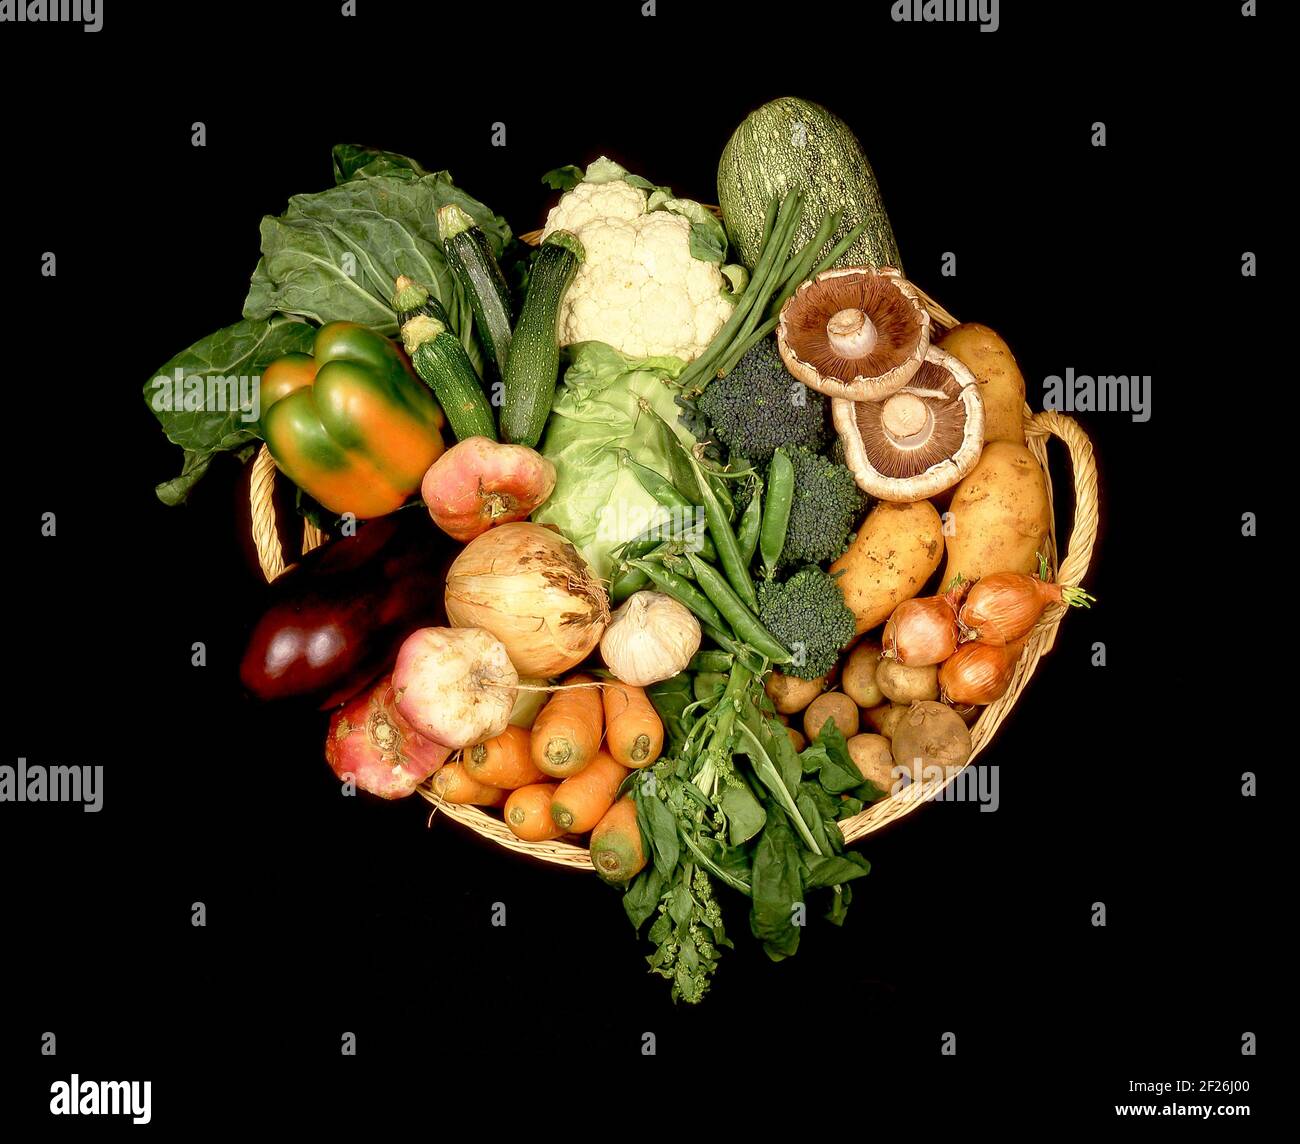 Panier rempli de légumes, Grand Londres, Angleterre, Royaume-Uni Banque D'Images